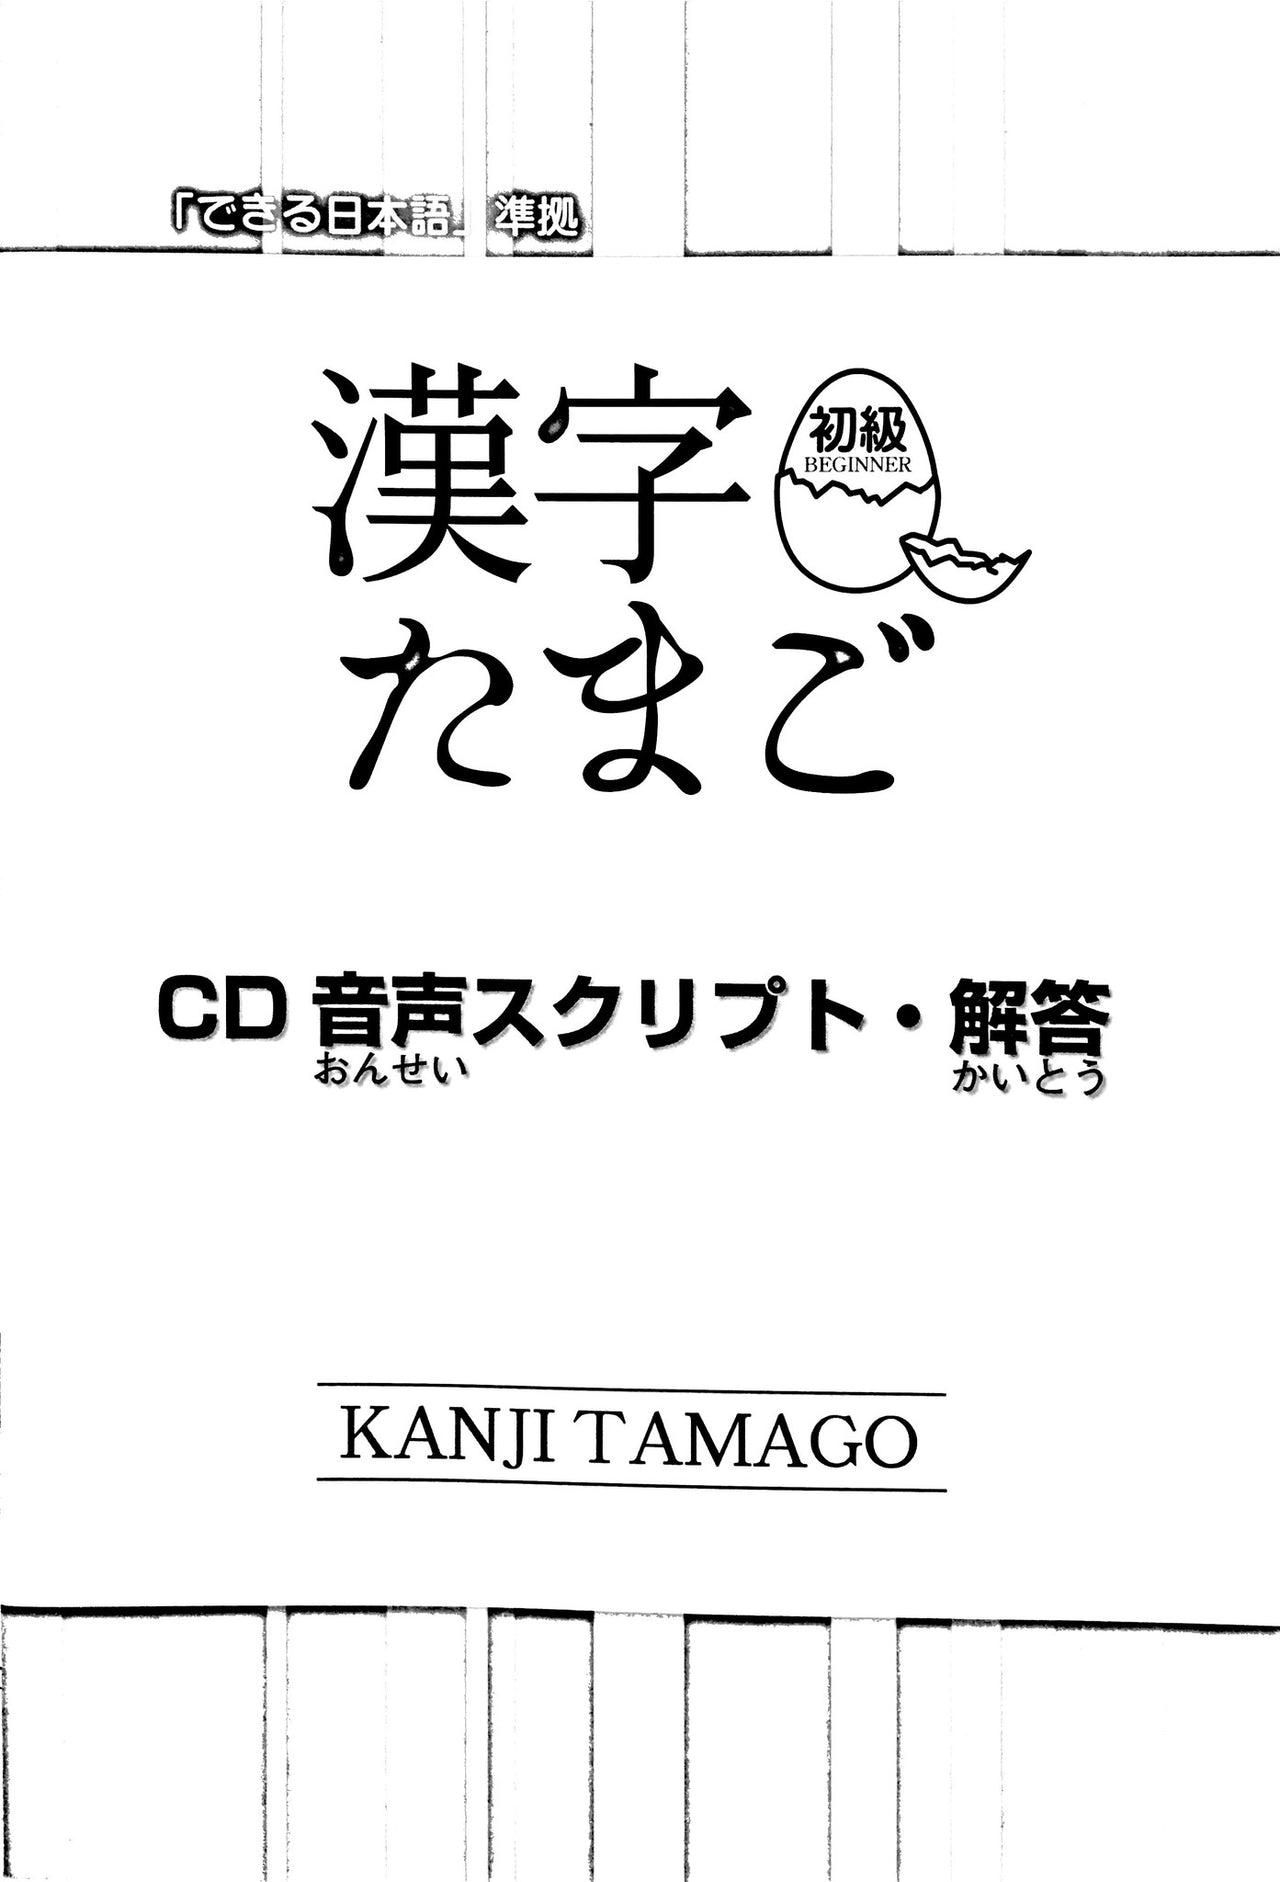 Kanji Tamago with CD - The Japan Shop